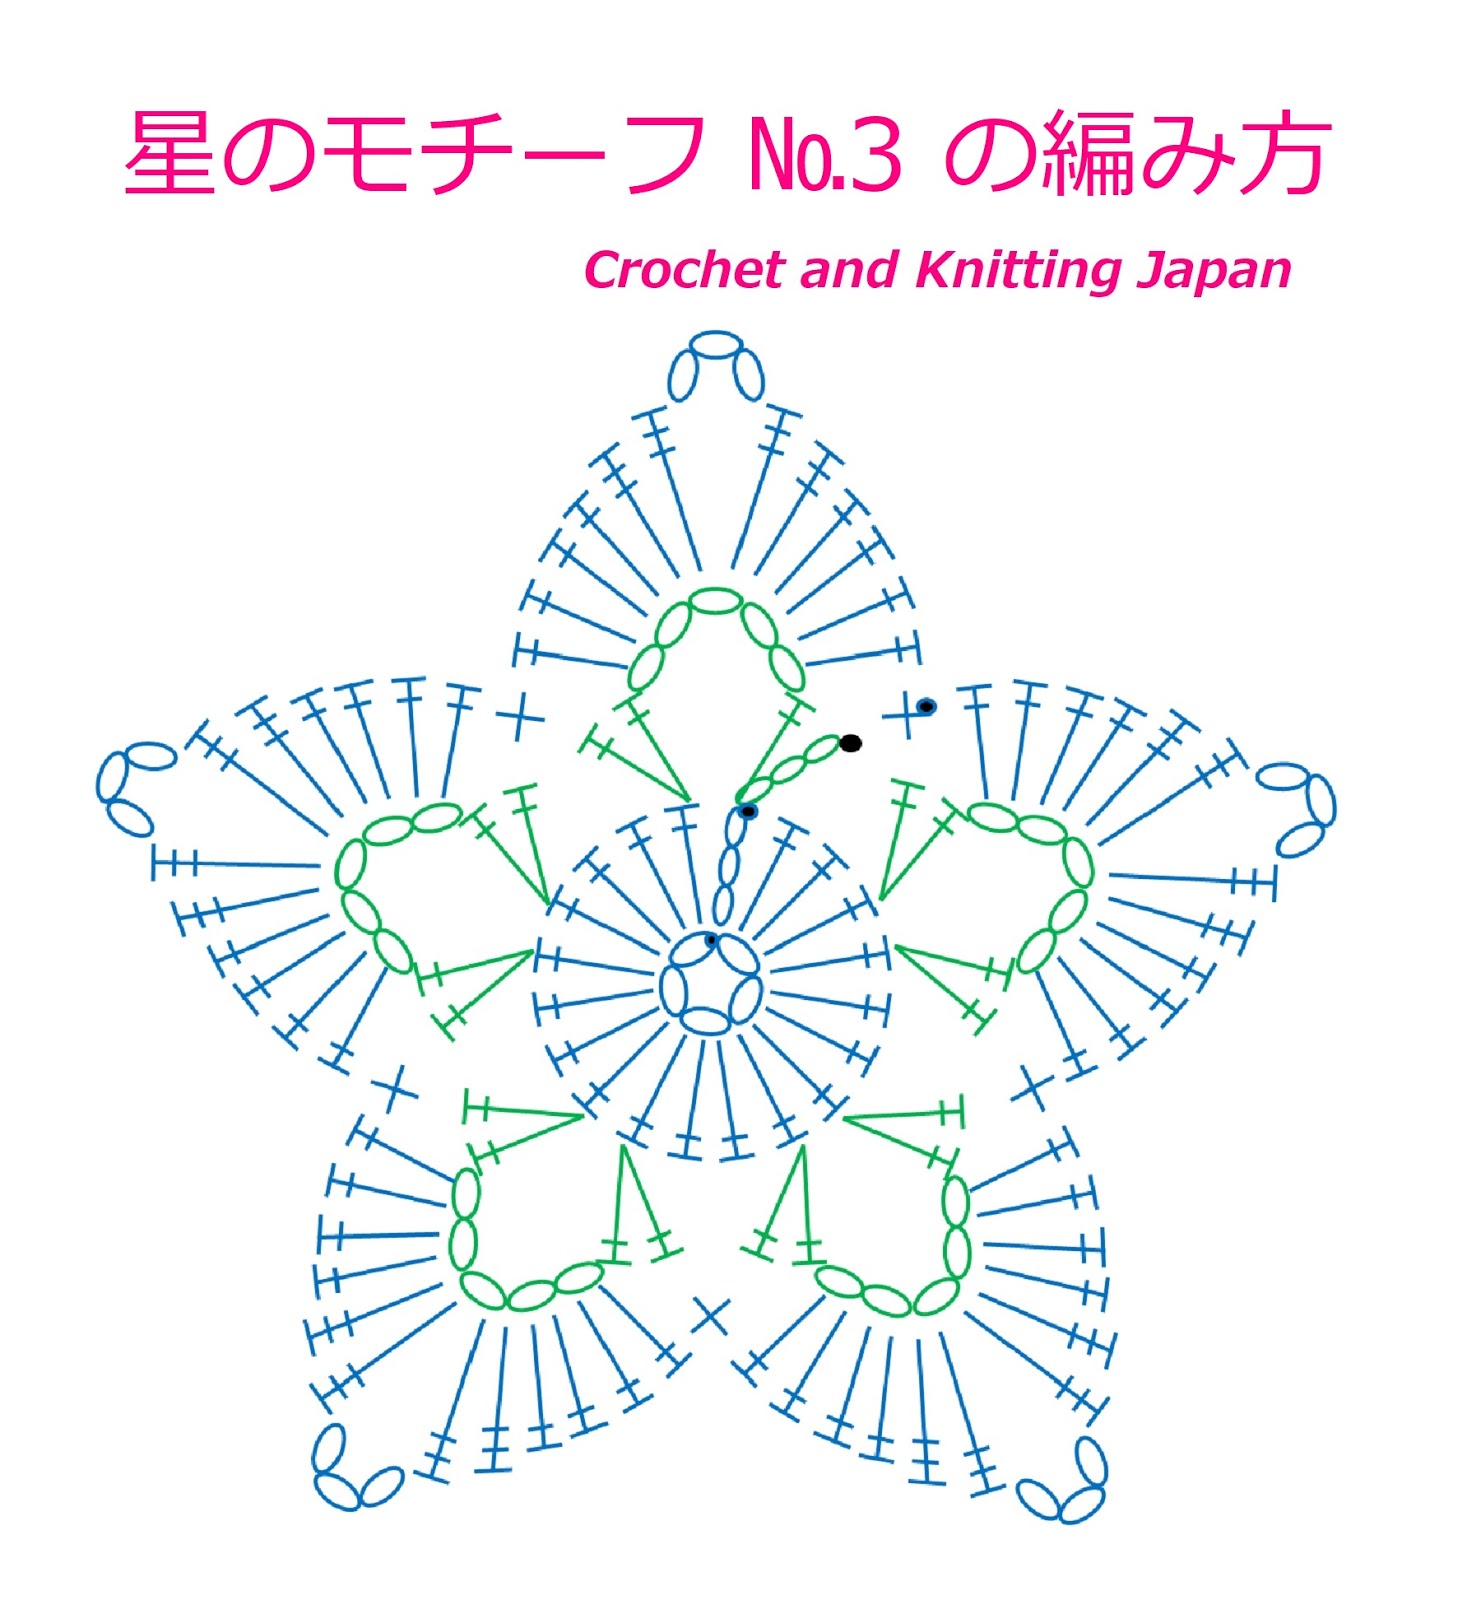 かぎ編み Crochet Japan クロッシェジャパン かぎ針編み 星のモチーフ 3 の編み方 Crochet Star Motif Crochet And Knitting Japan